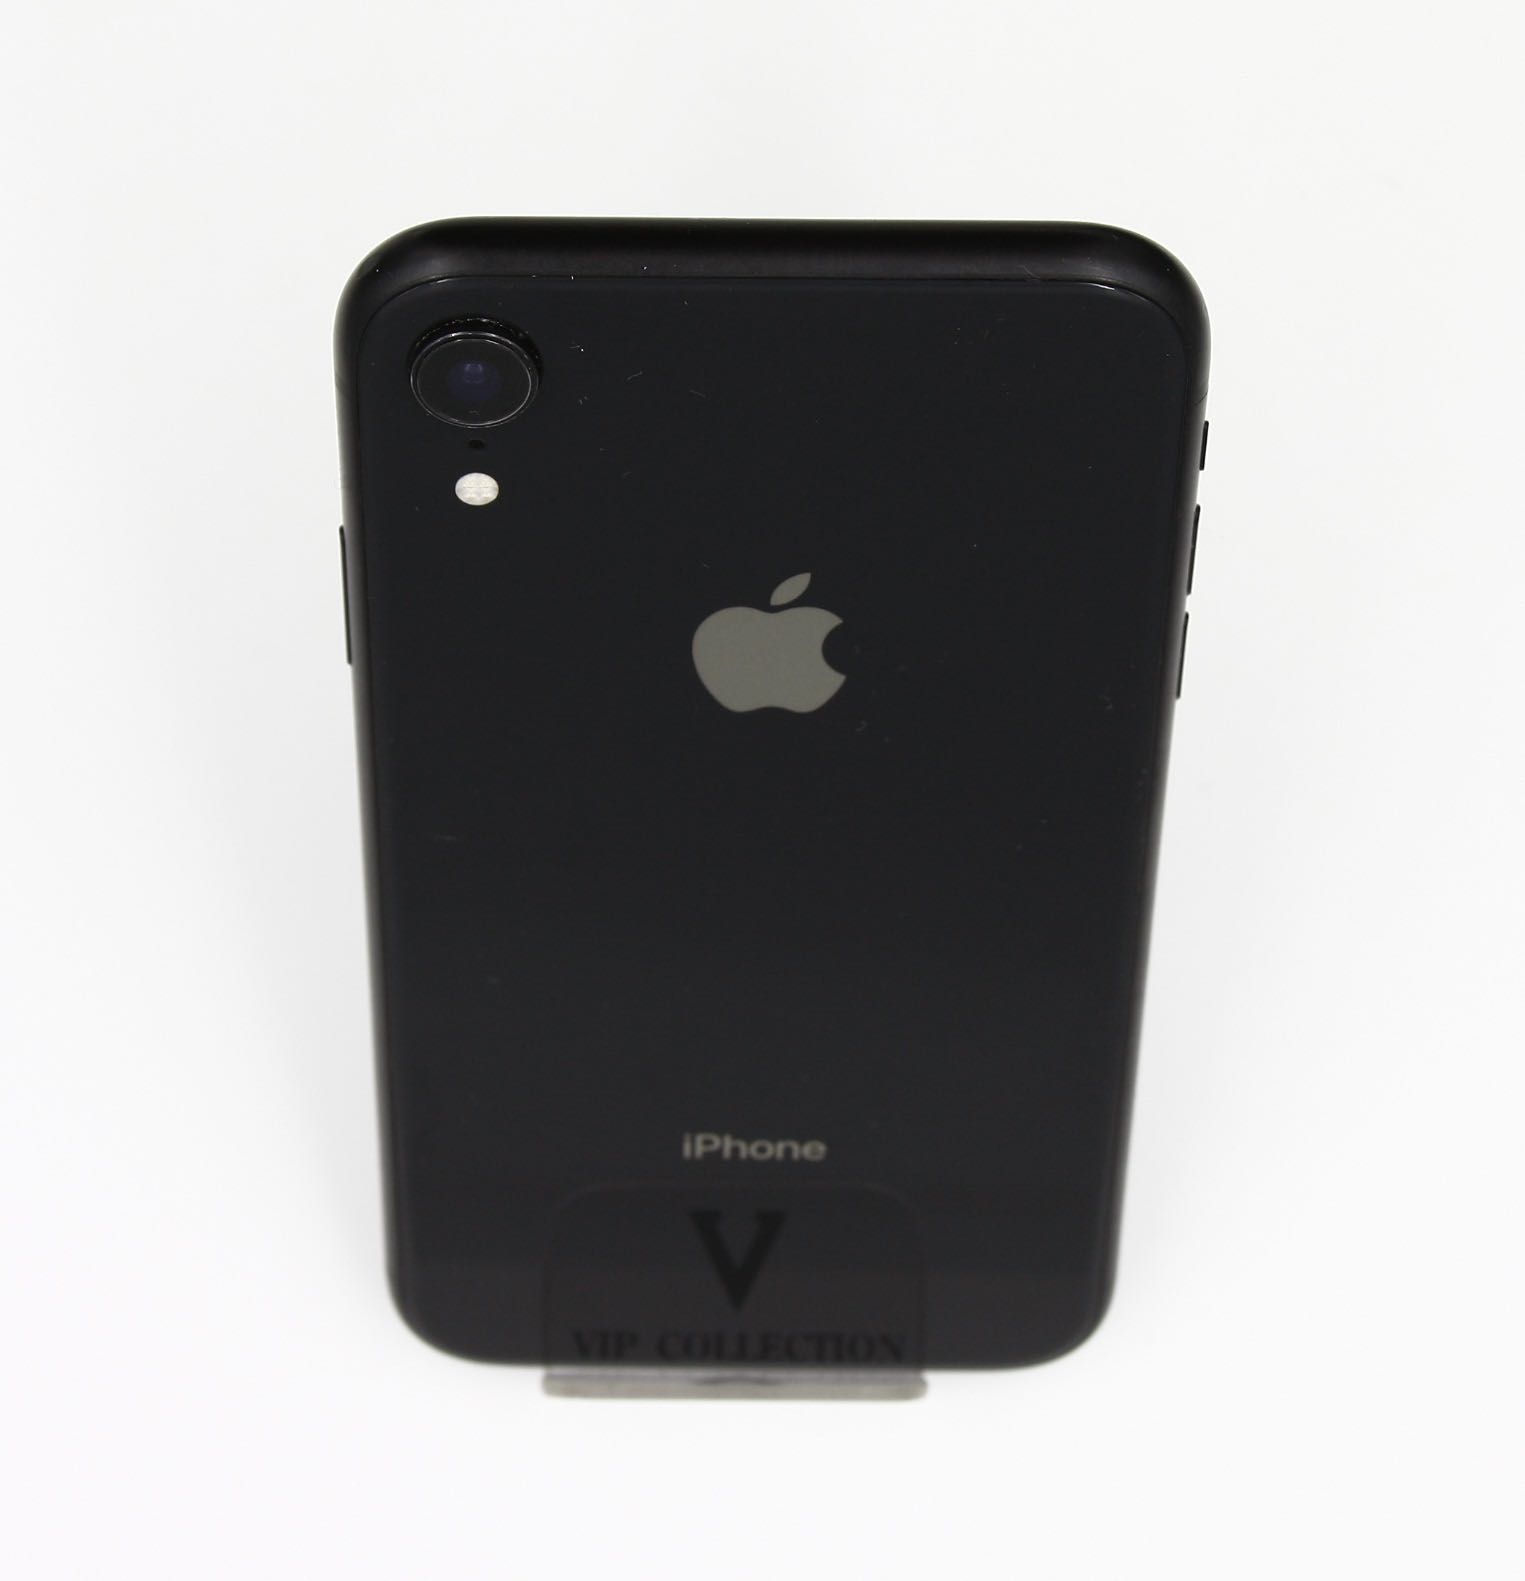 Продам б/у айфон XR 64 ГБ, Iphone XR 64 GB б/у, A1984, Black color.